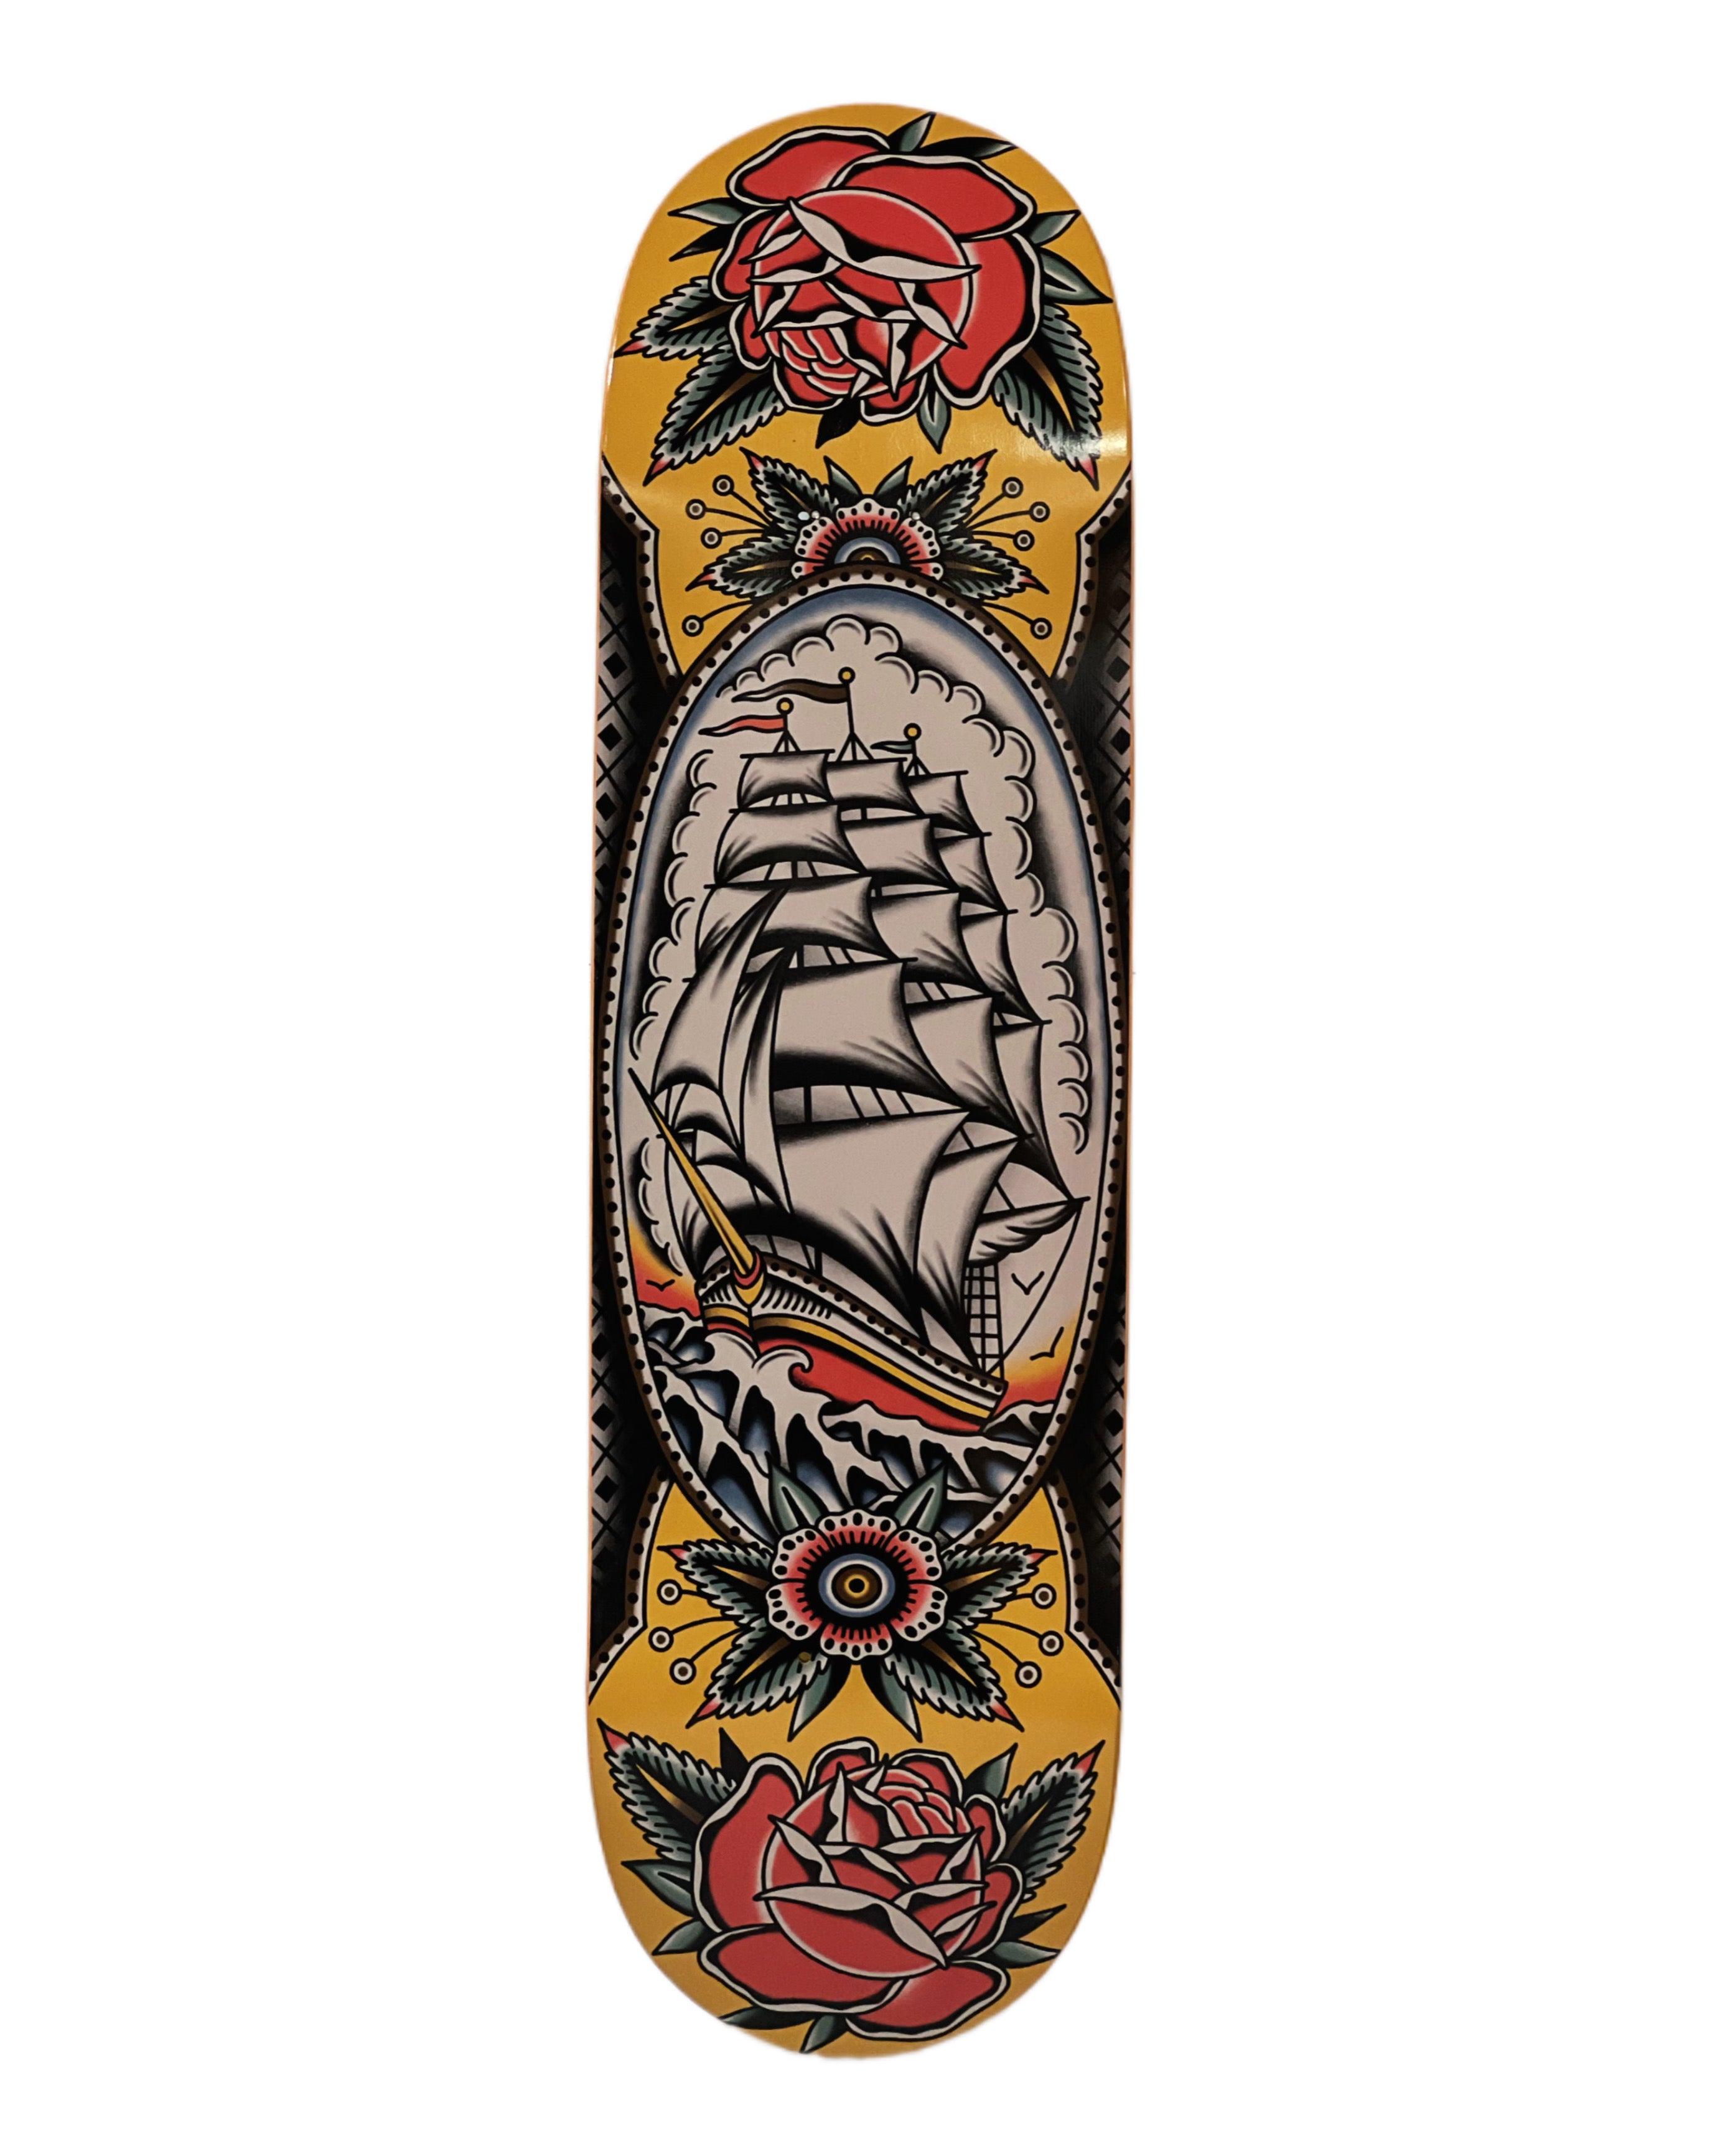 Clipper Ship - Skateboard